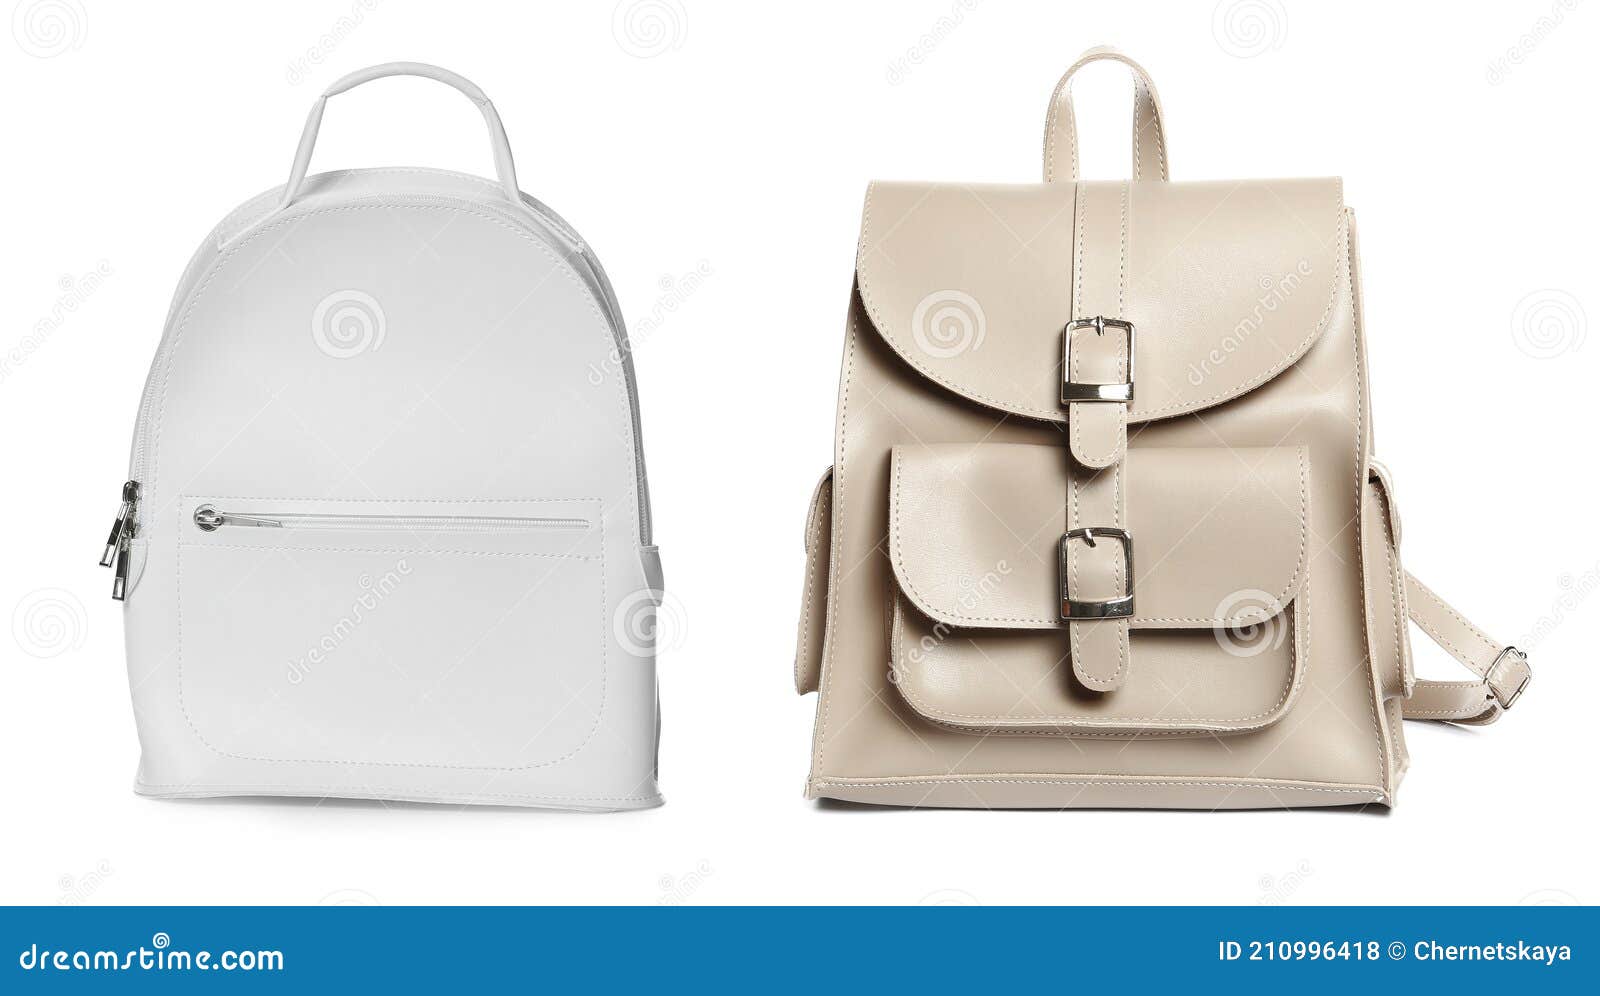 BOSTANTEN Genuine Leather Backpack Purse for Women 15.6 inch Laptop Backpack  Large Travel College Shoulder Bag